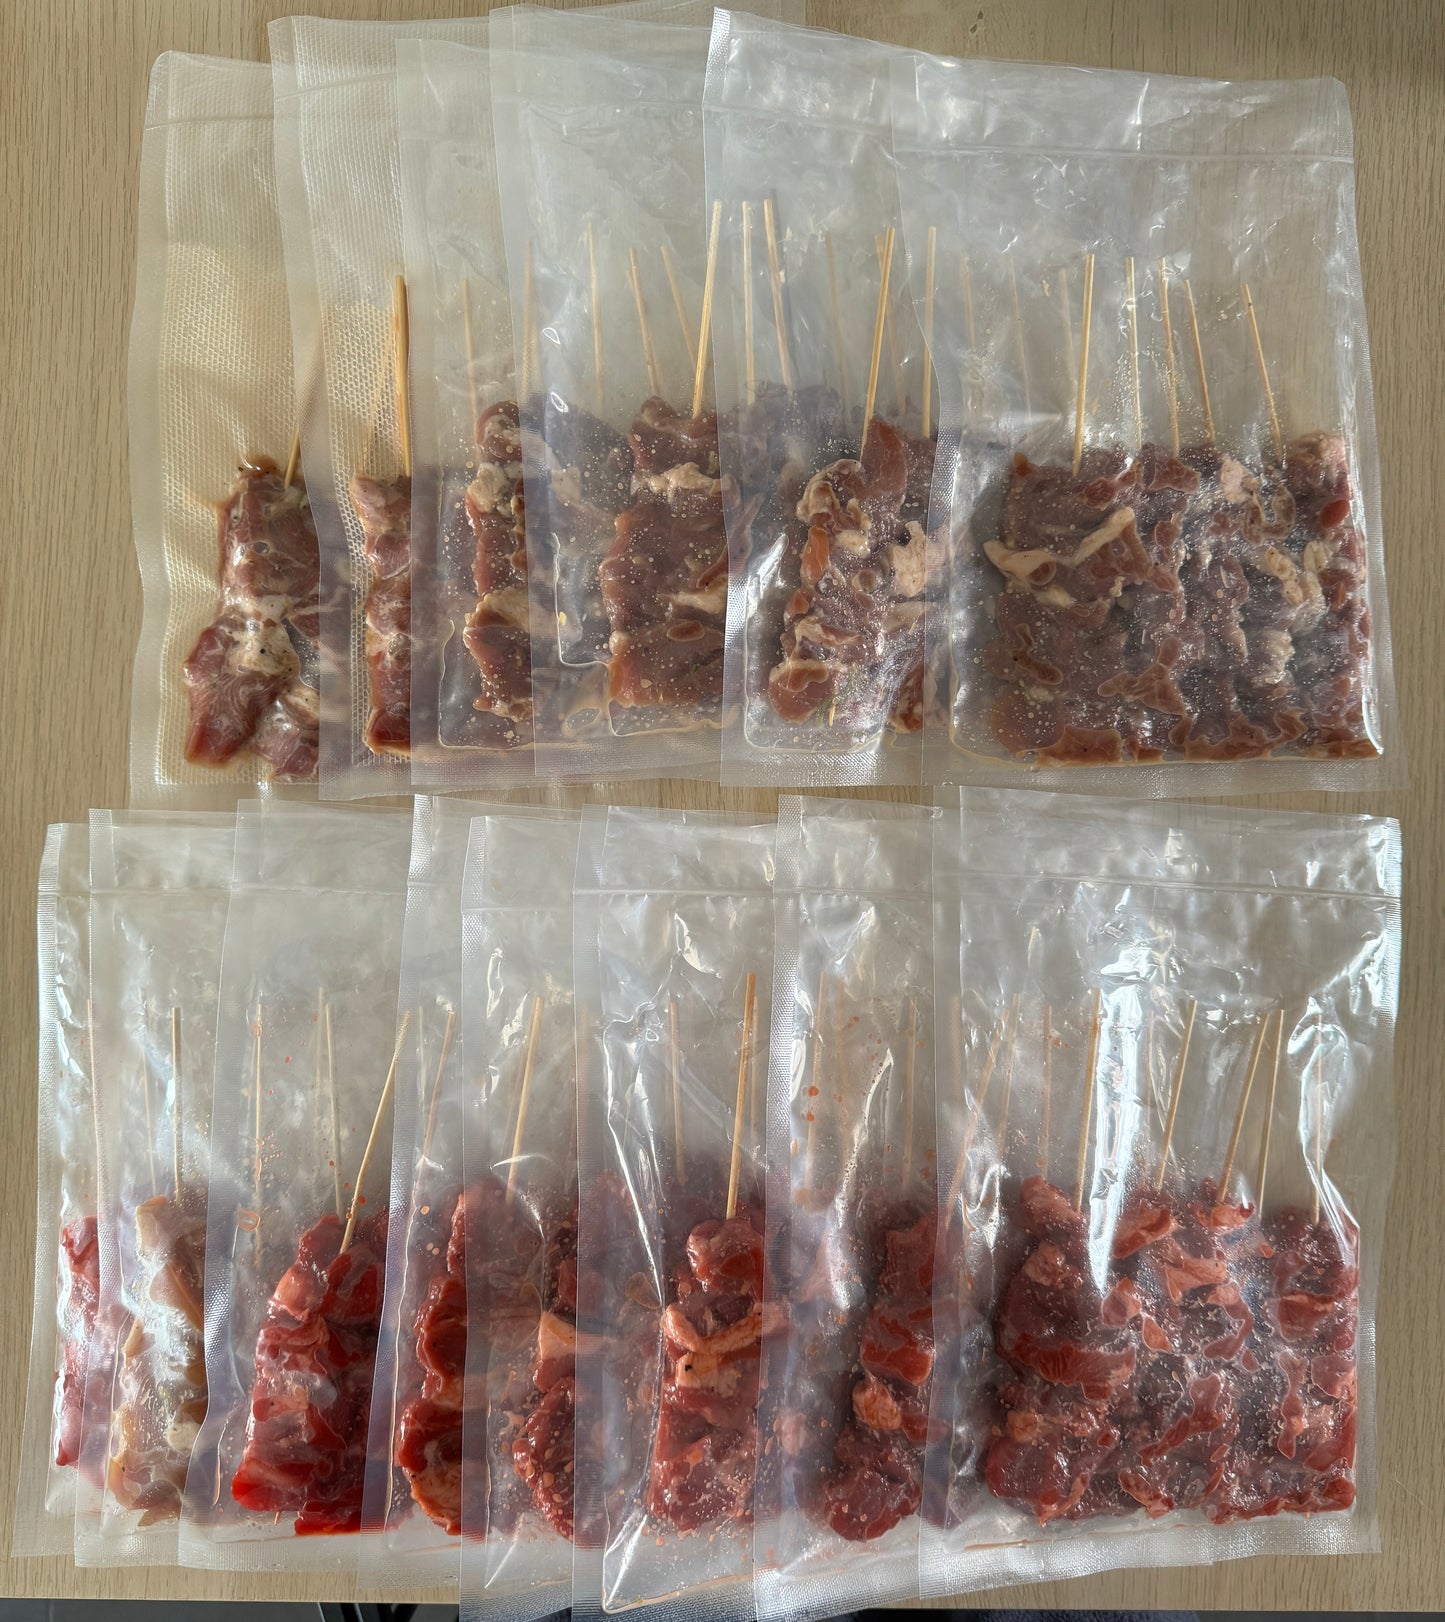 Gai/Moo Ping Daeng - Gegrild vlees gemarineerd in rode saus (5 stuks)